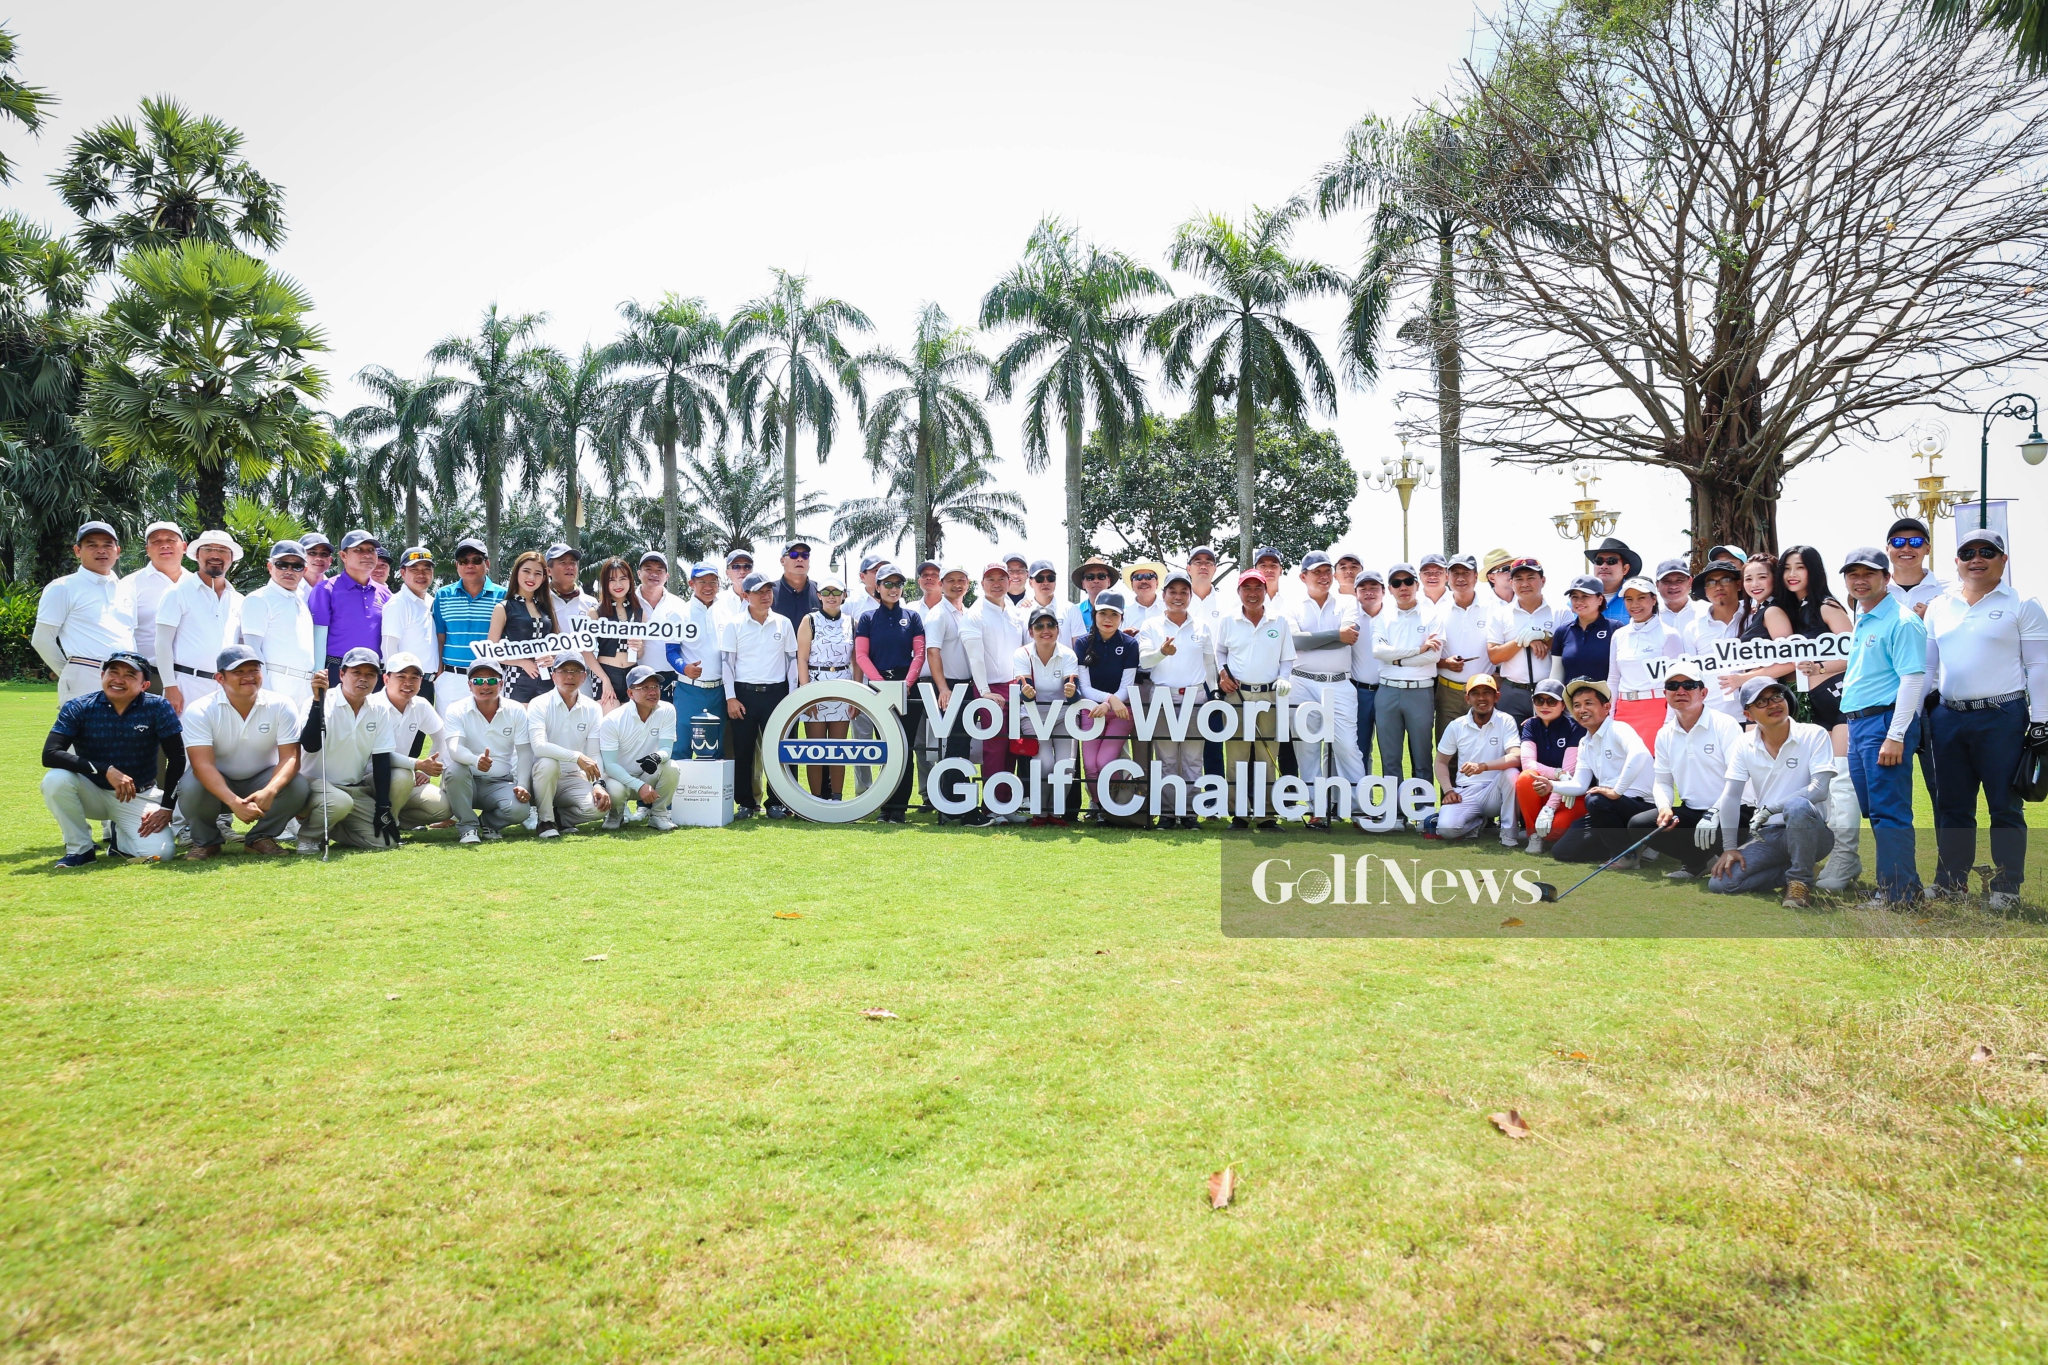 Volvo World Golf Challenge - Viet Nam 2019: Chính thức bùng nổ vòng tuyển chọn khu vực phía Nam